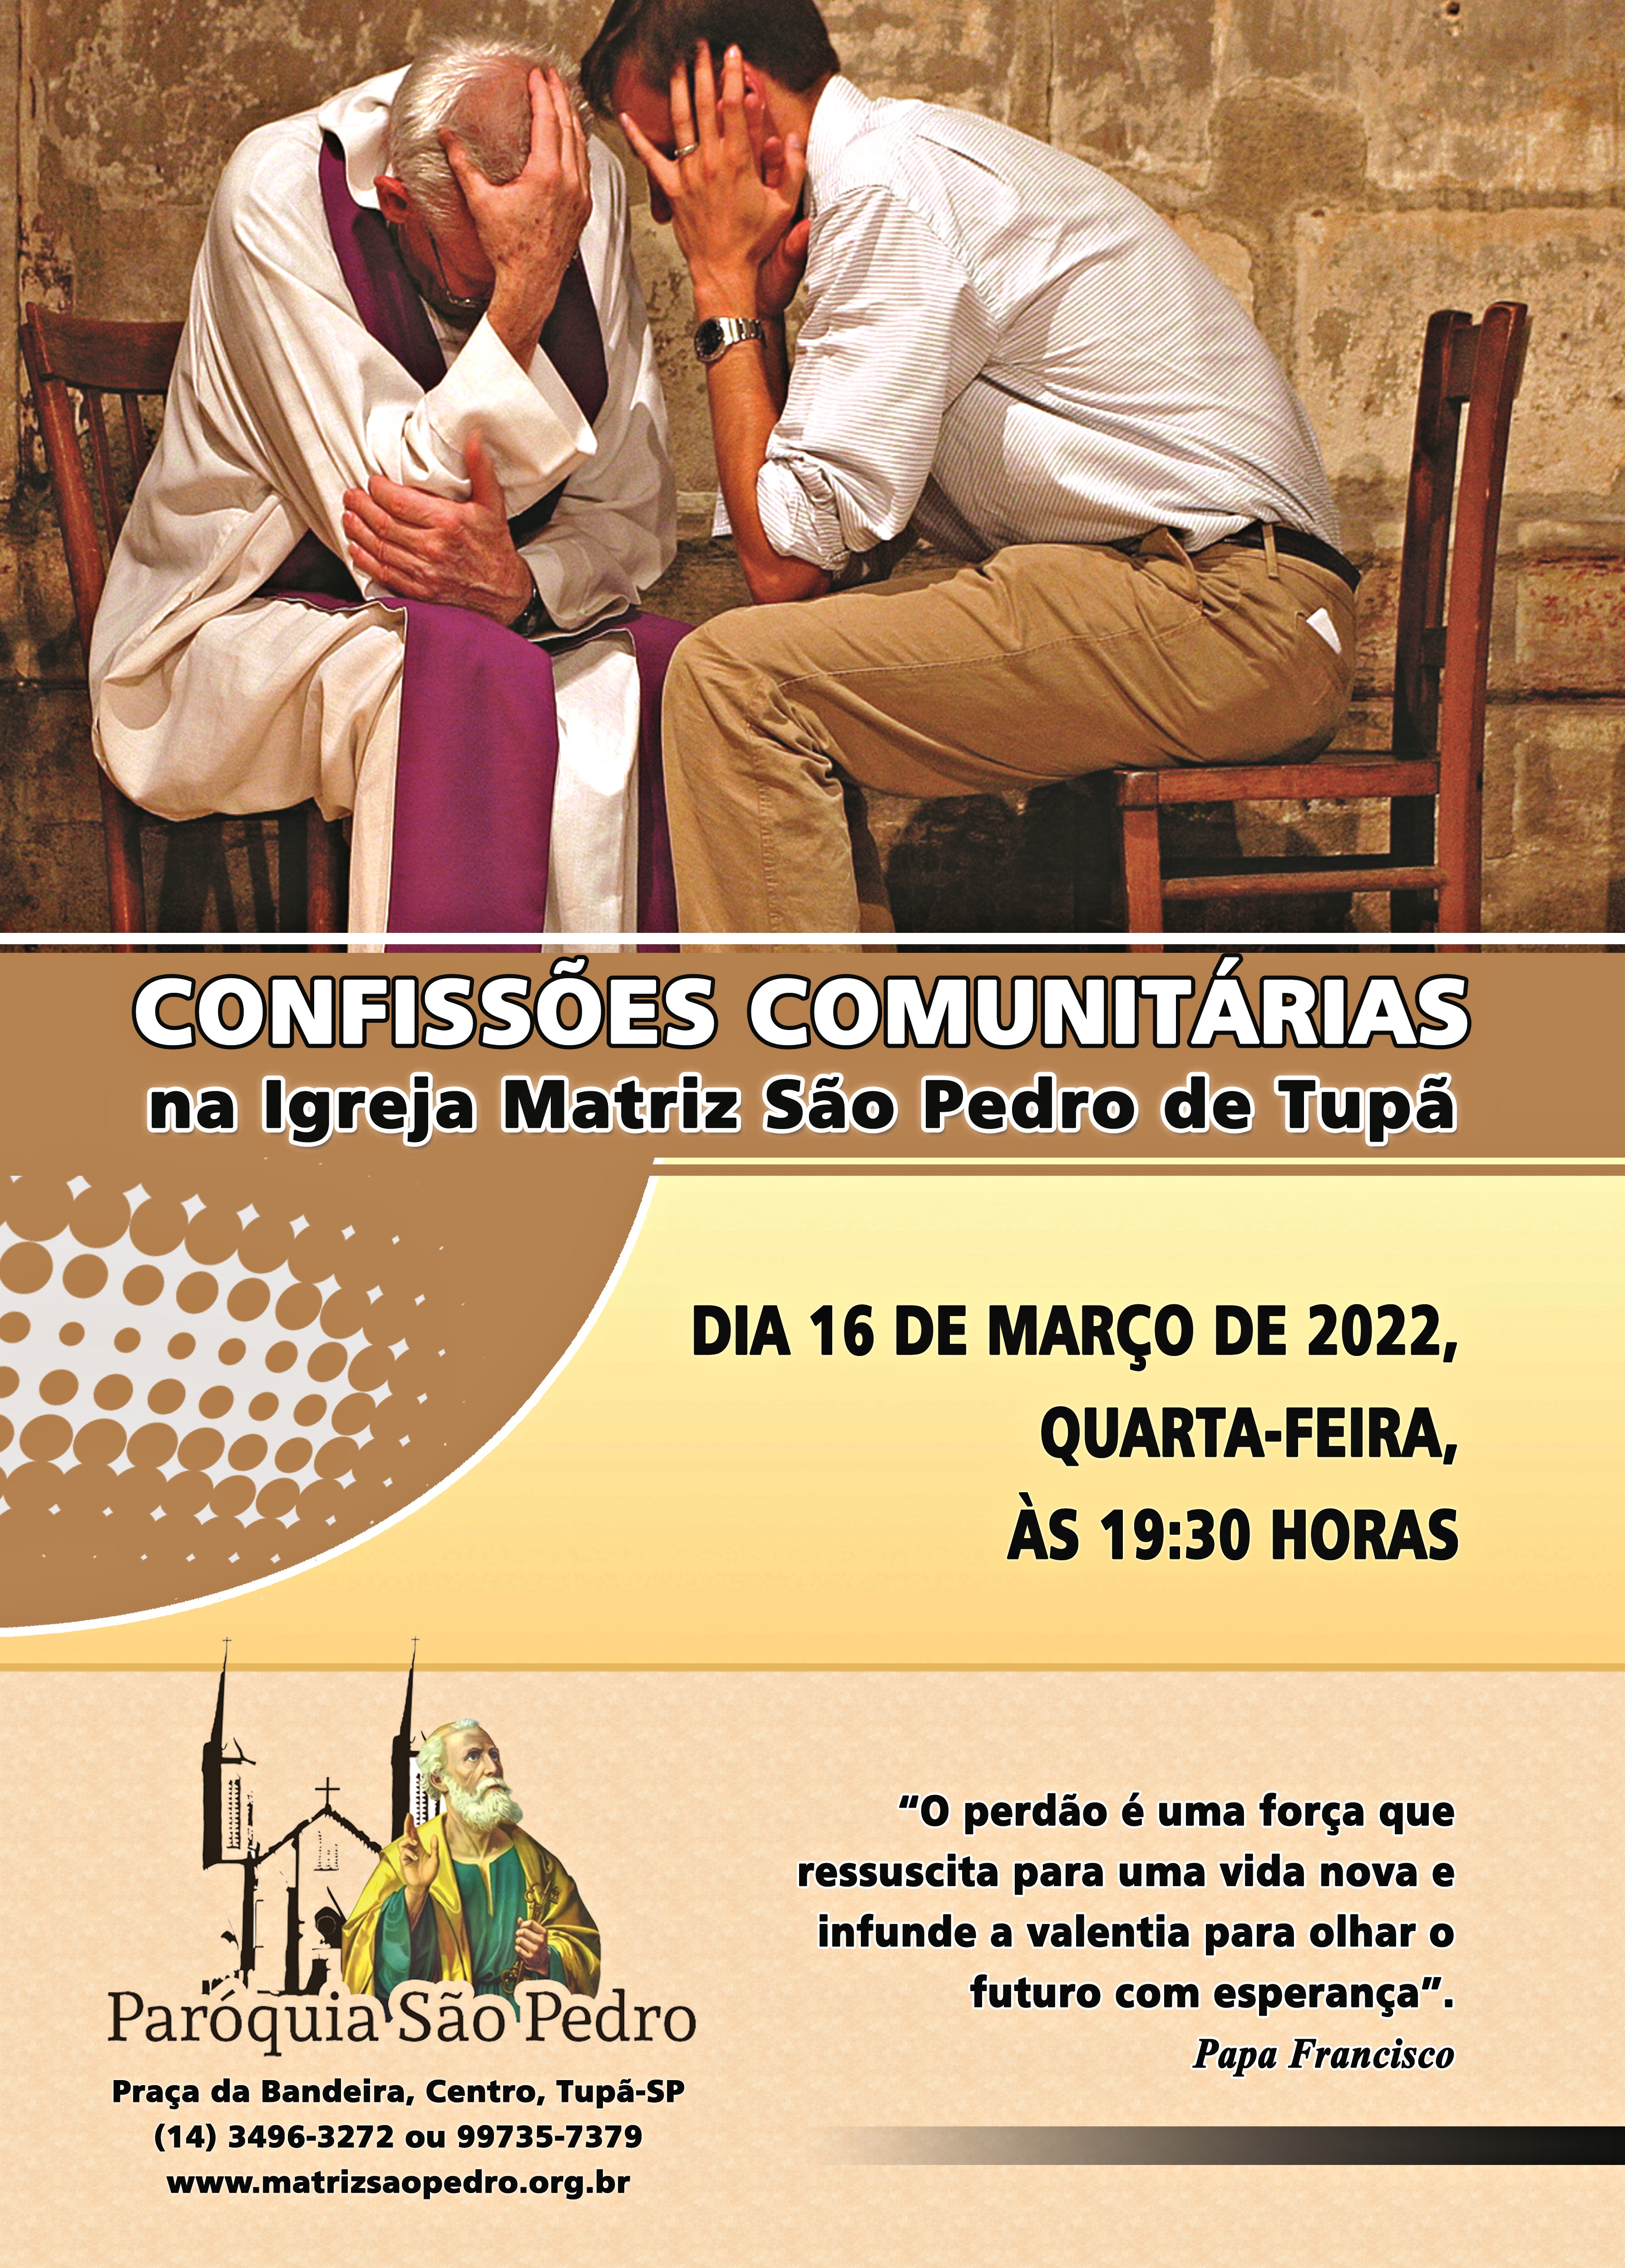 Confisses Comunitrias da Quaresma sero realizadas na So Pedro de Tup